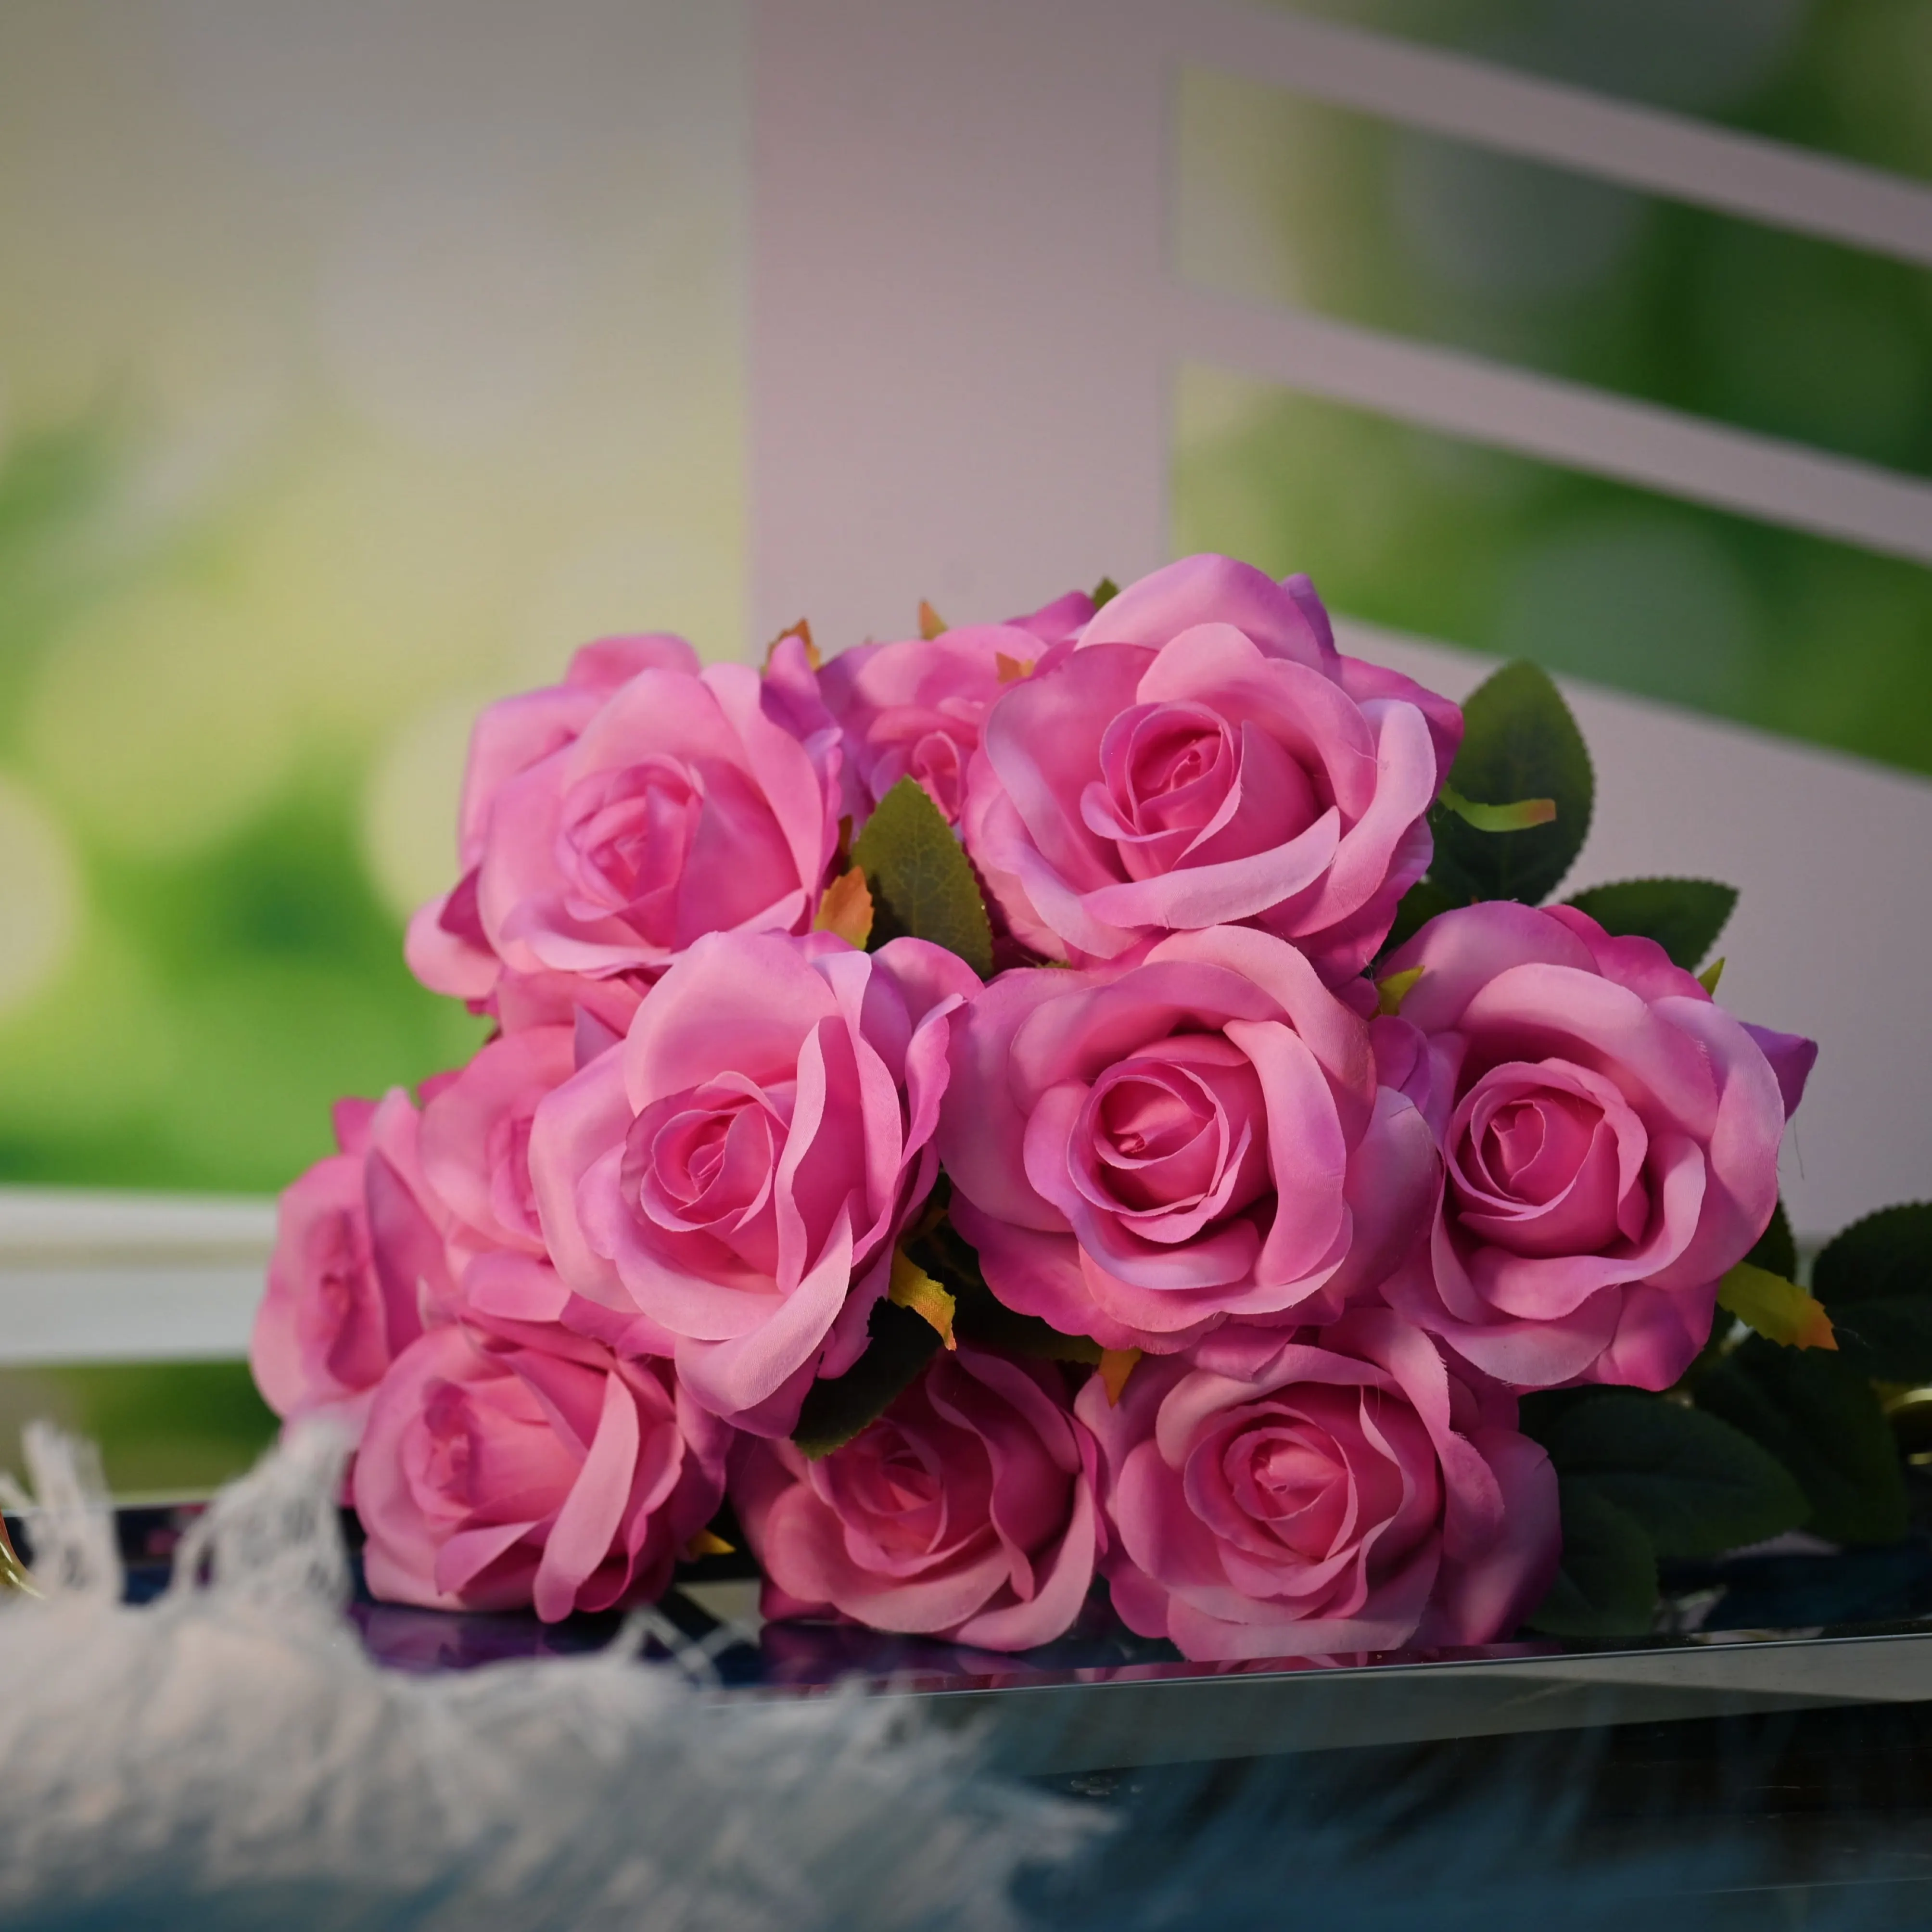 Bunga jumlah besar buatan bunga sentuhan asli mawar Cina dekorasi rumah pernikahan